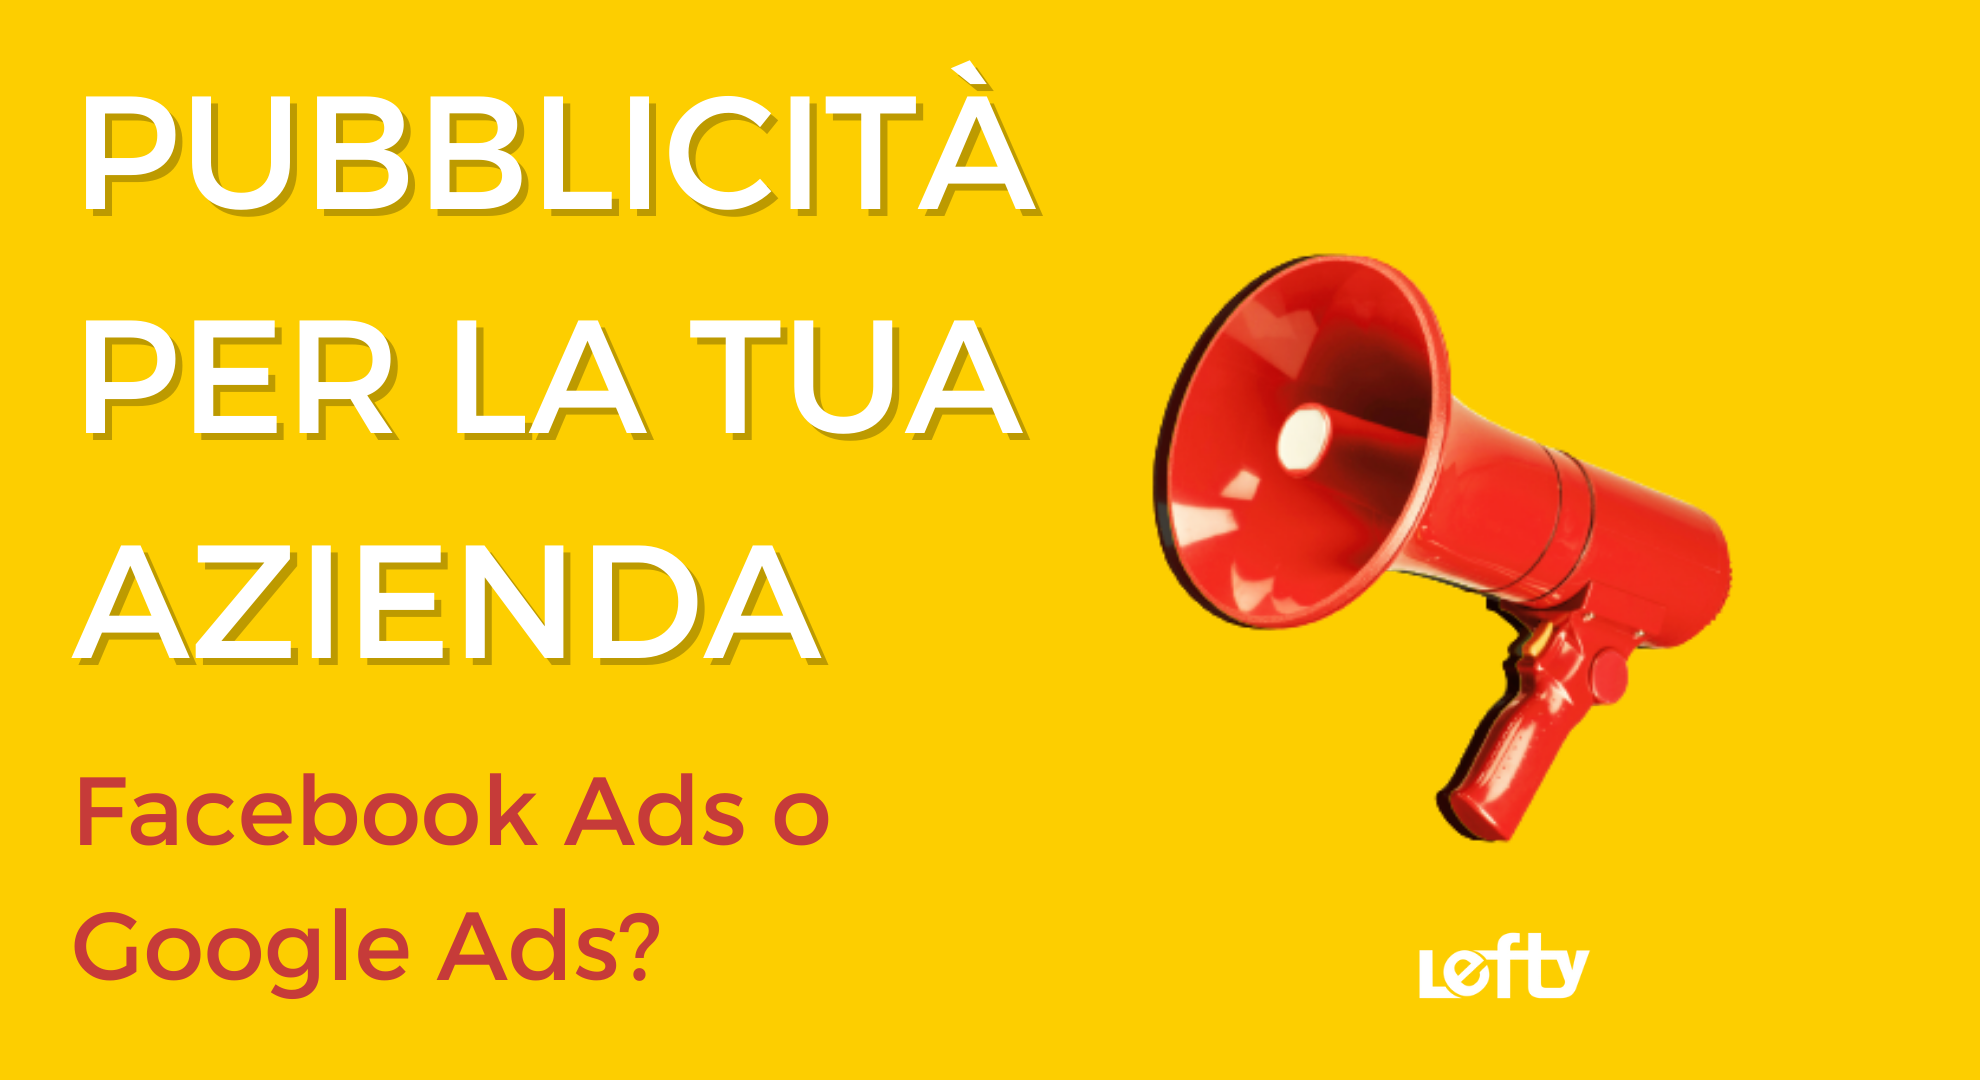 Pubblicità per la tua azienda: Facebook Ads o Google Ads?